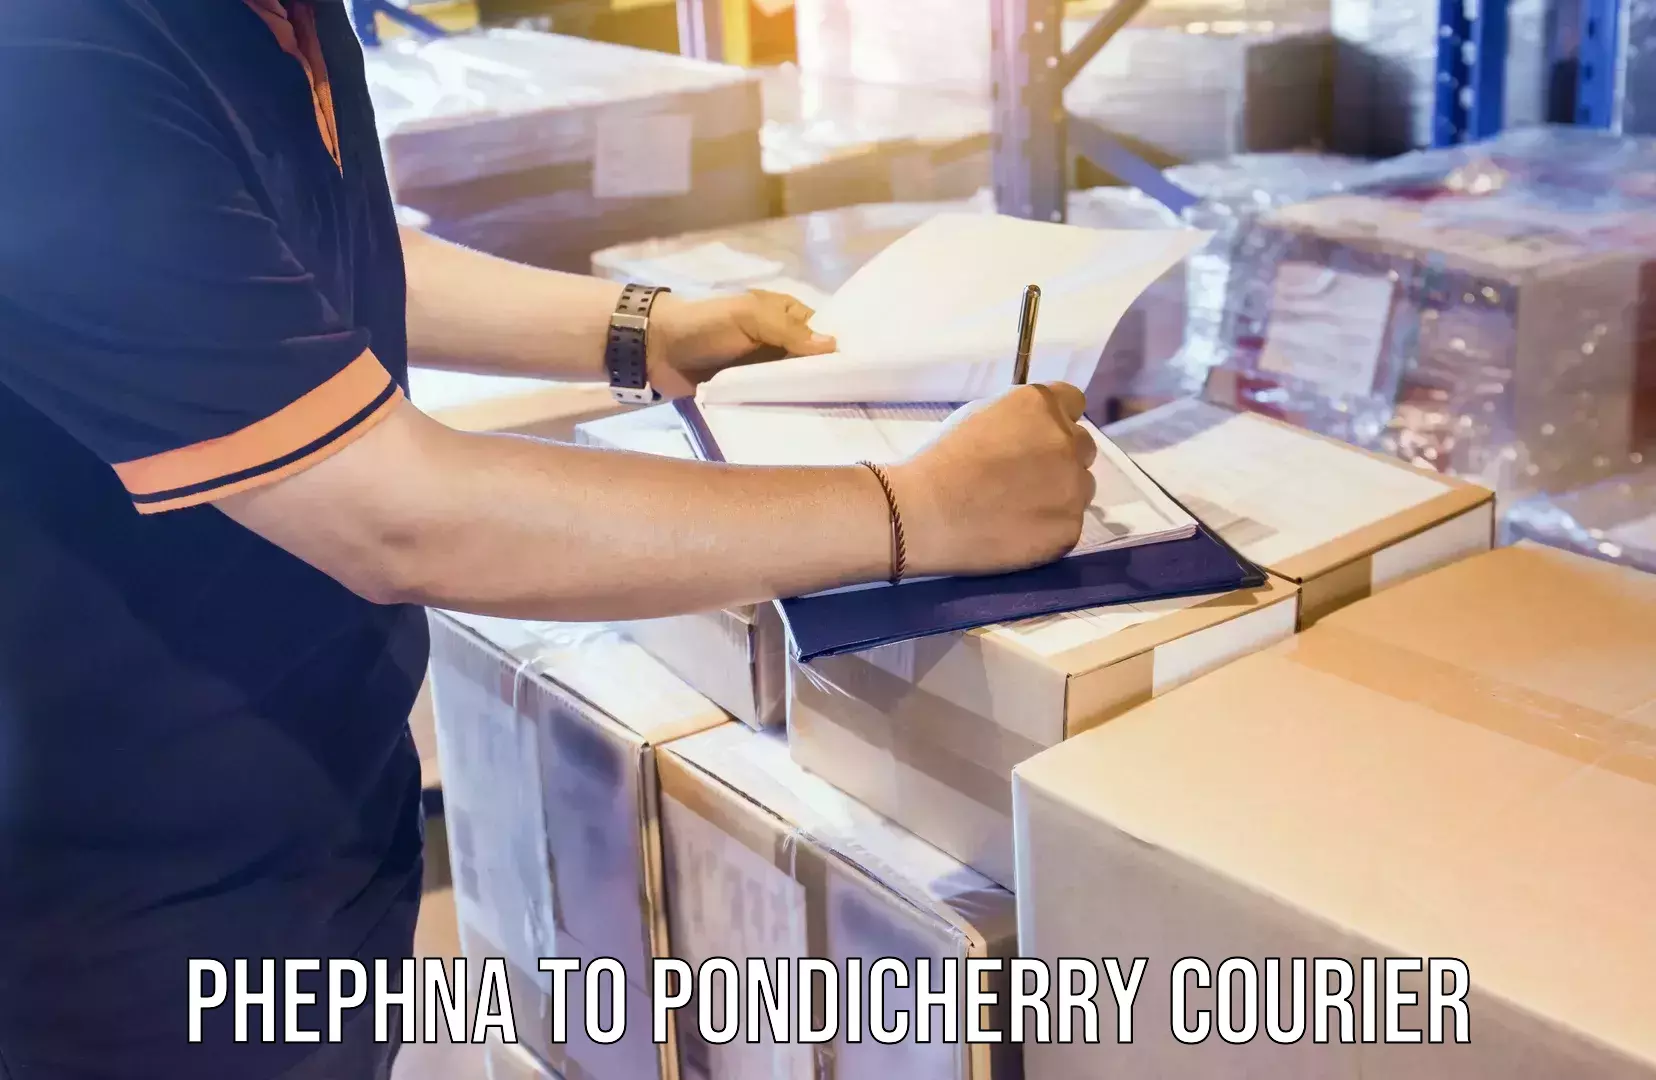 Quality moving company Phephna to Pondicherry